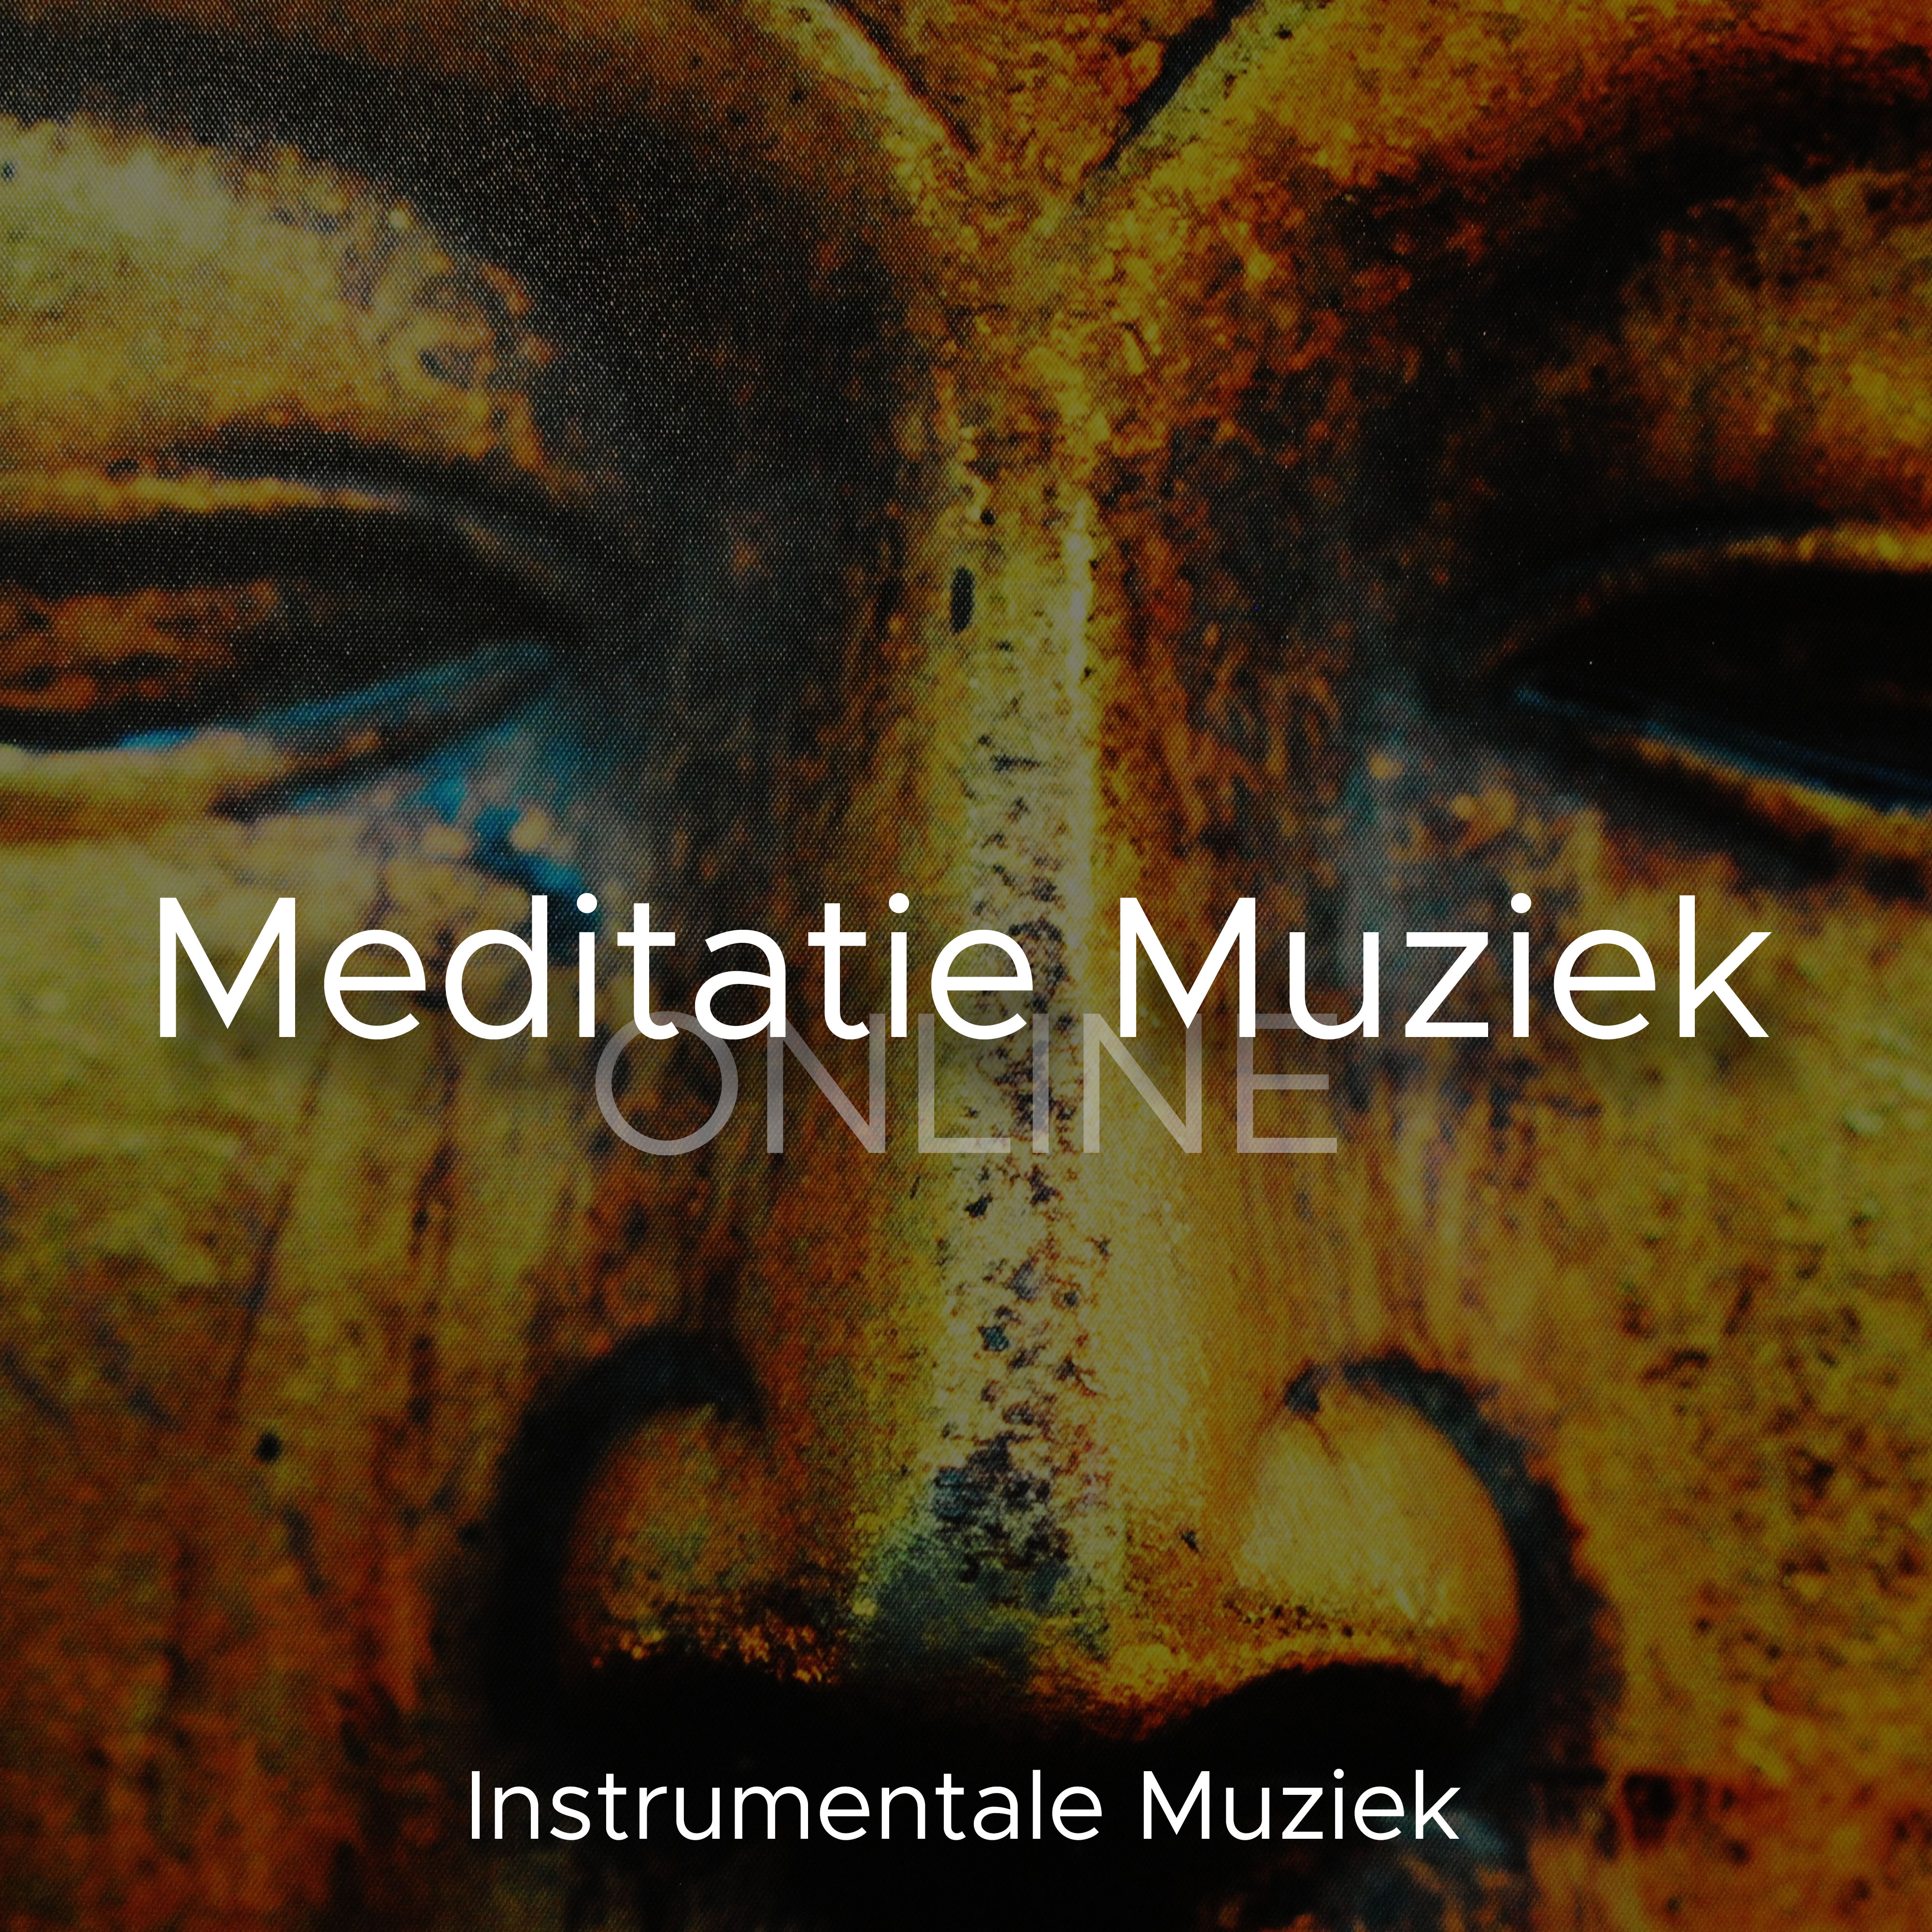 Meditatie Muziek Online: Instrumentale Muziek voor Diepe Ontspanning. Natuurgeluiden en Witte Ruis